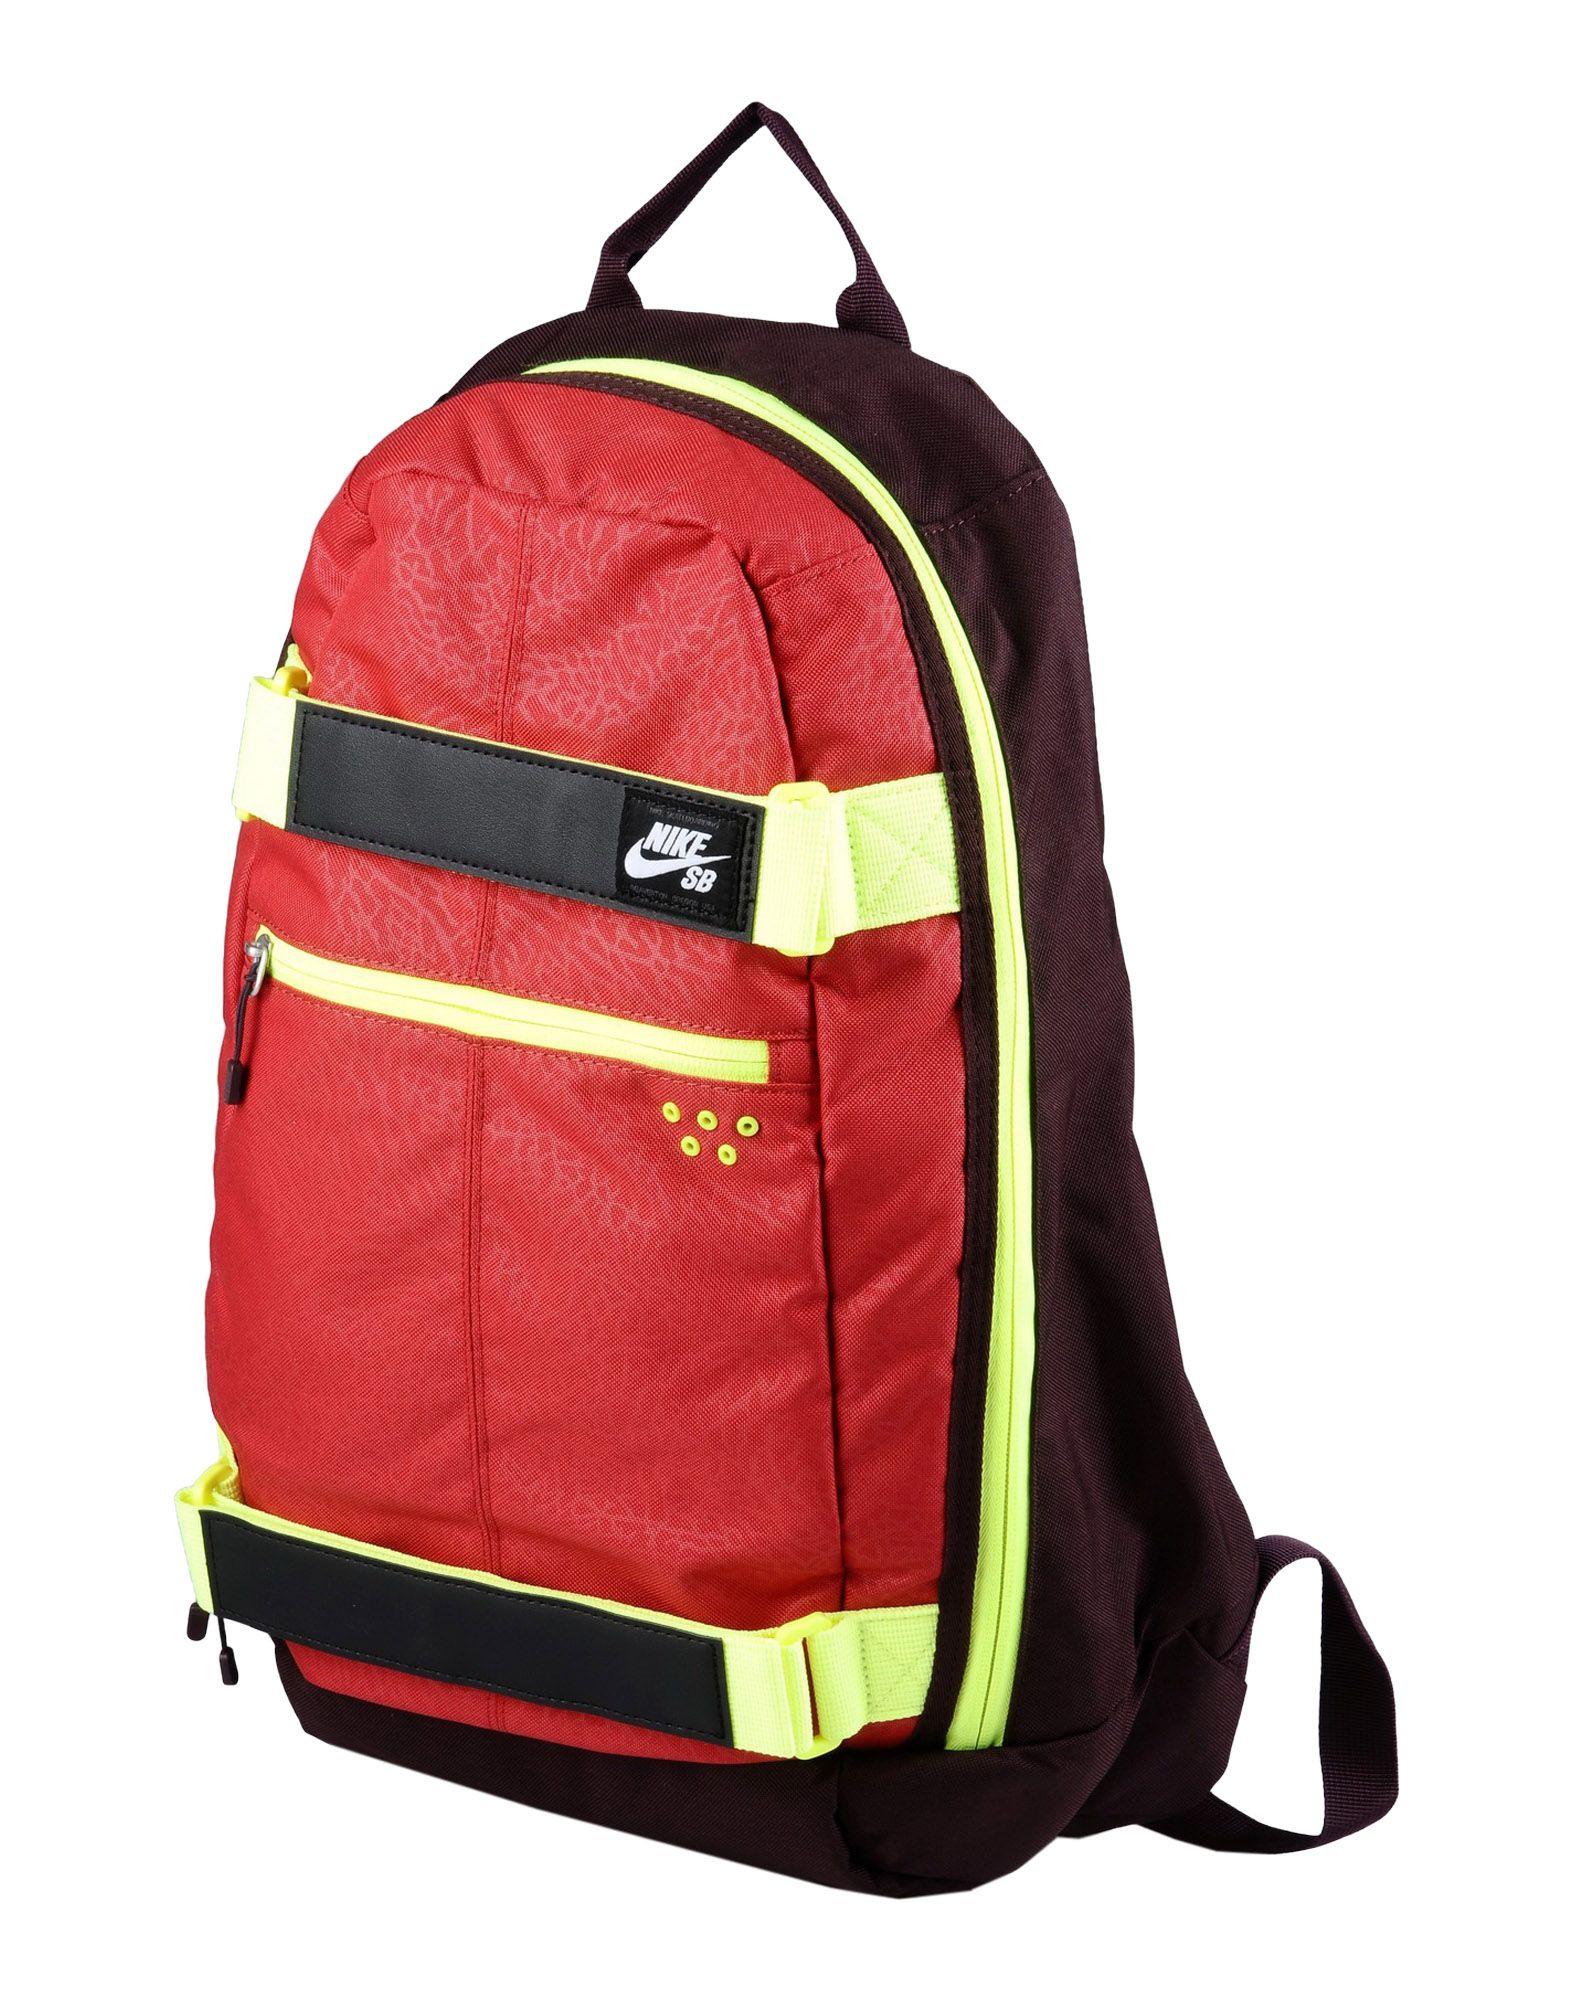 Lyst - Nike Backpacks & Fanny Packs in Red for Men